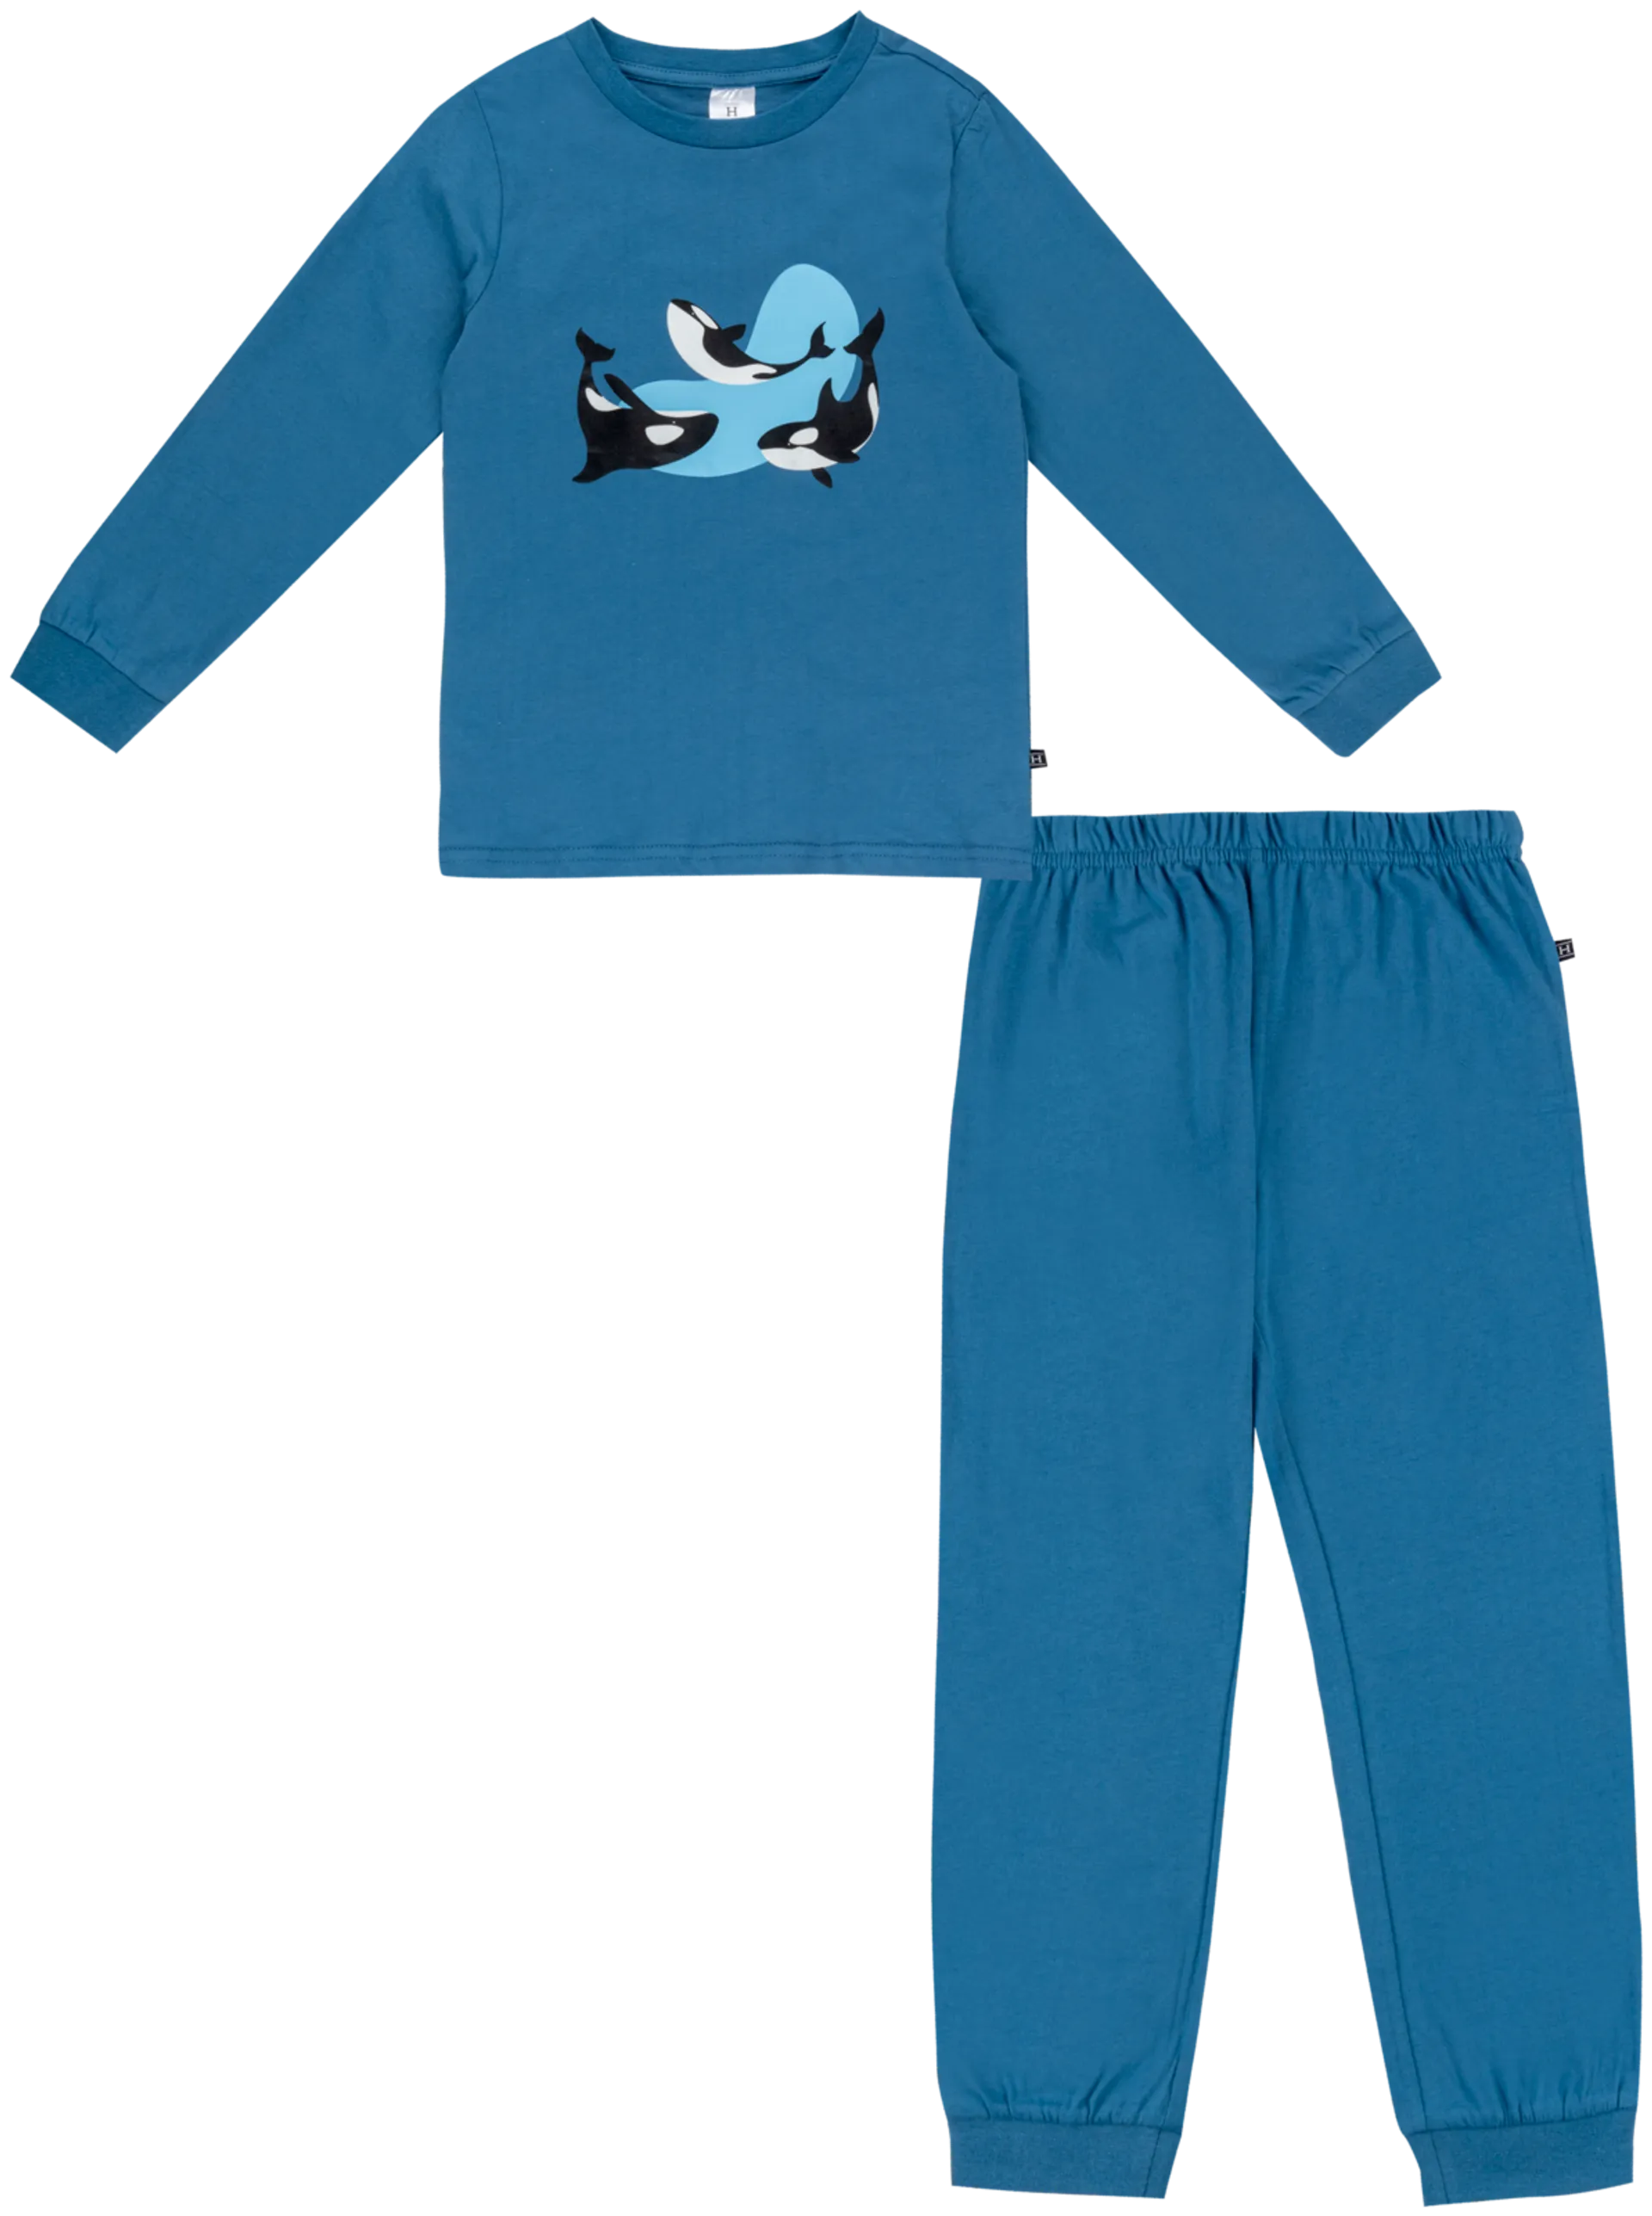 House lasten pyjama 232H032401 2-pack - BLUE AOP - 2